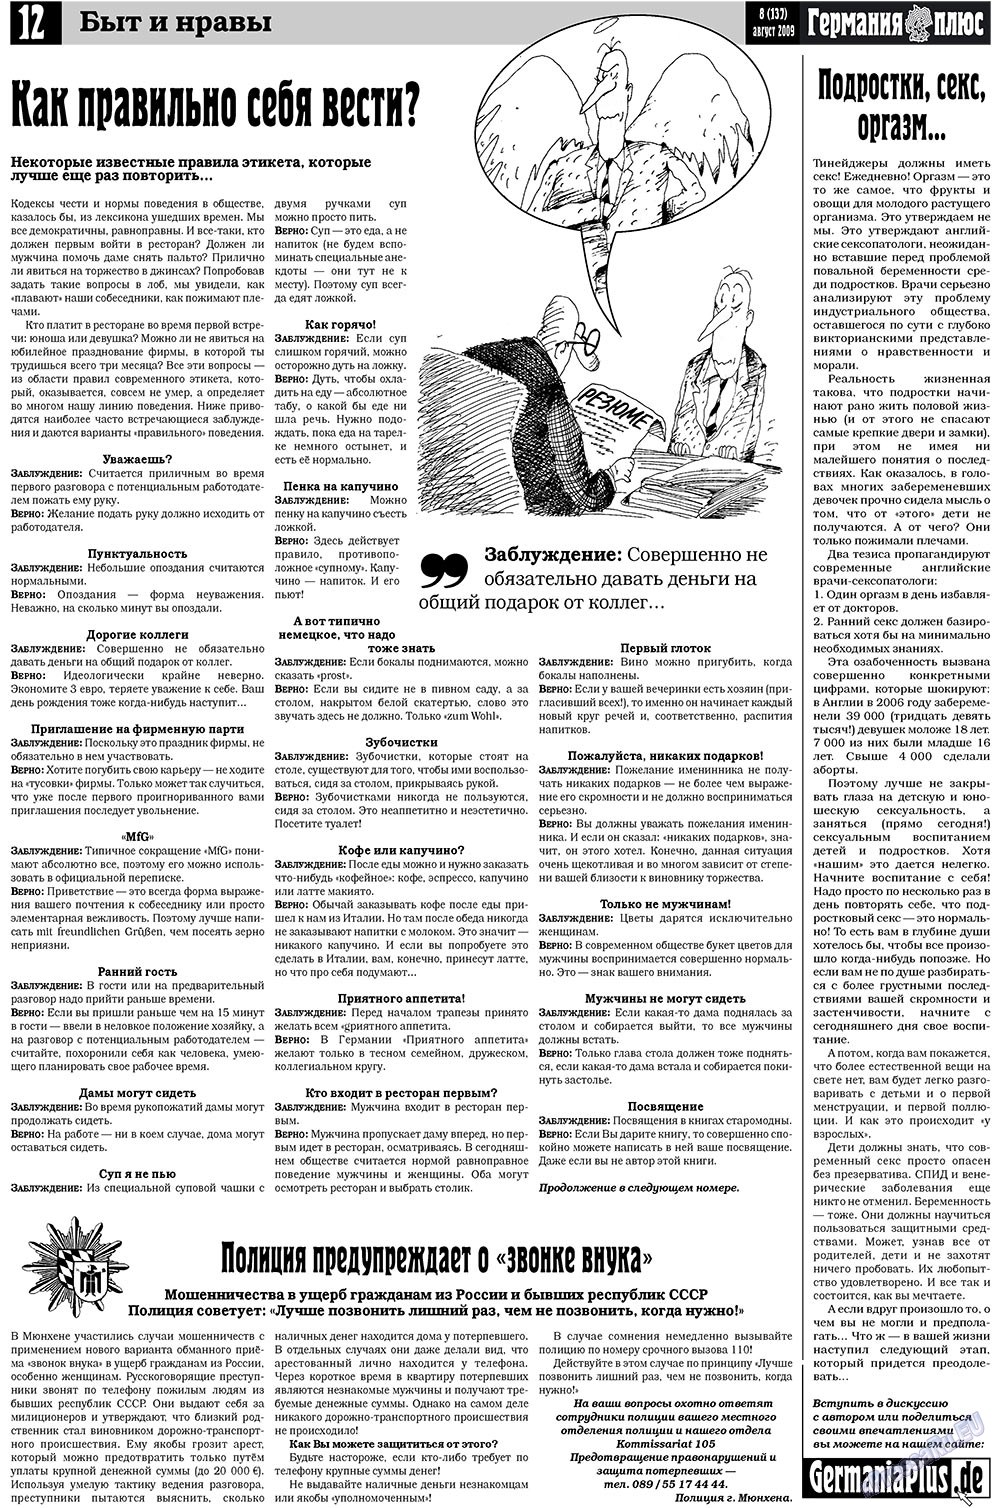 Германия плюс, газета. 2009 №8 стр.16